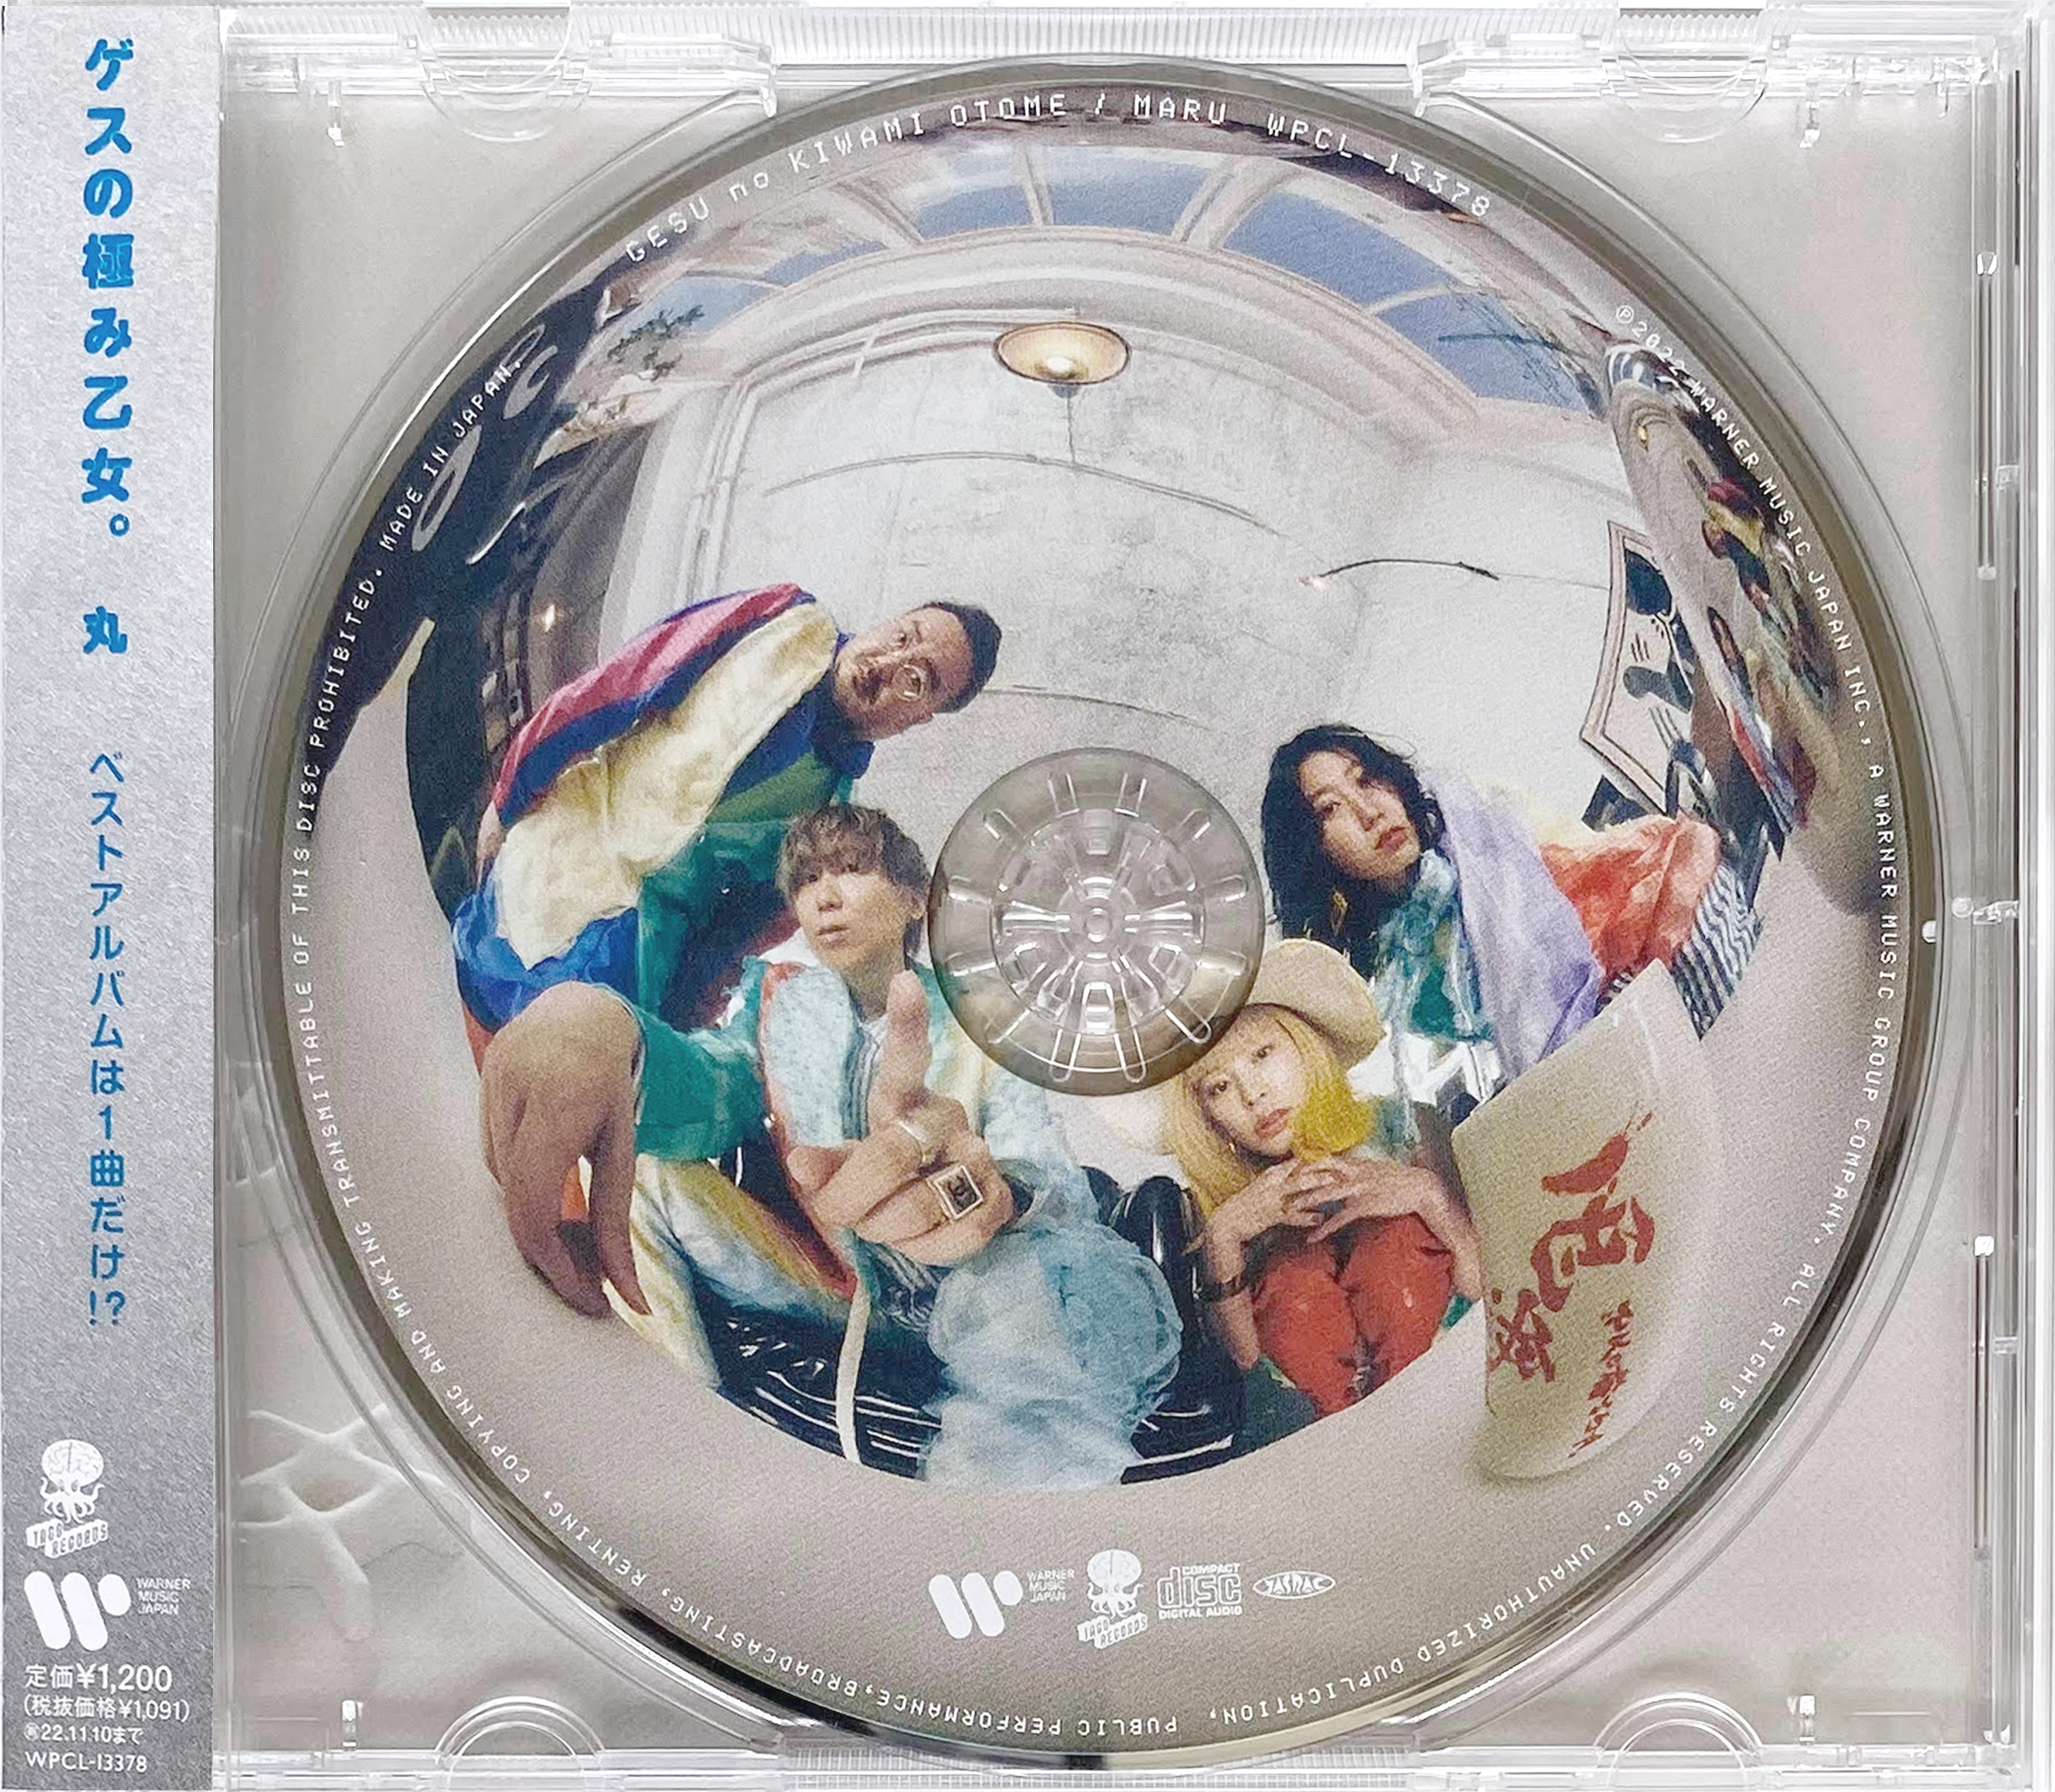 ベストアルバム『丸』CD